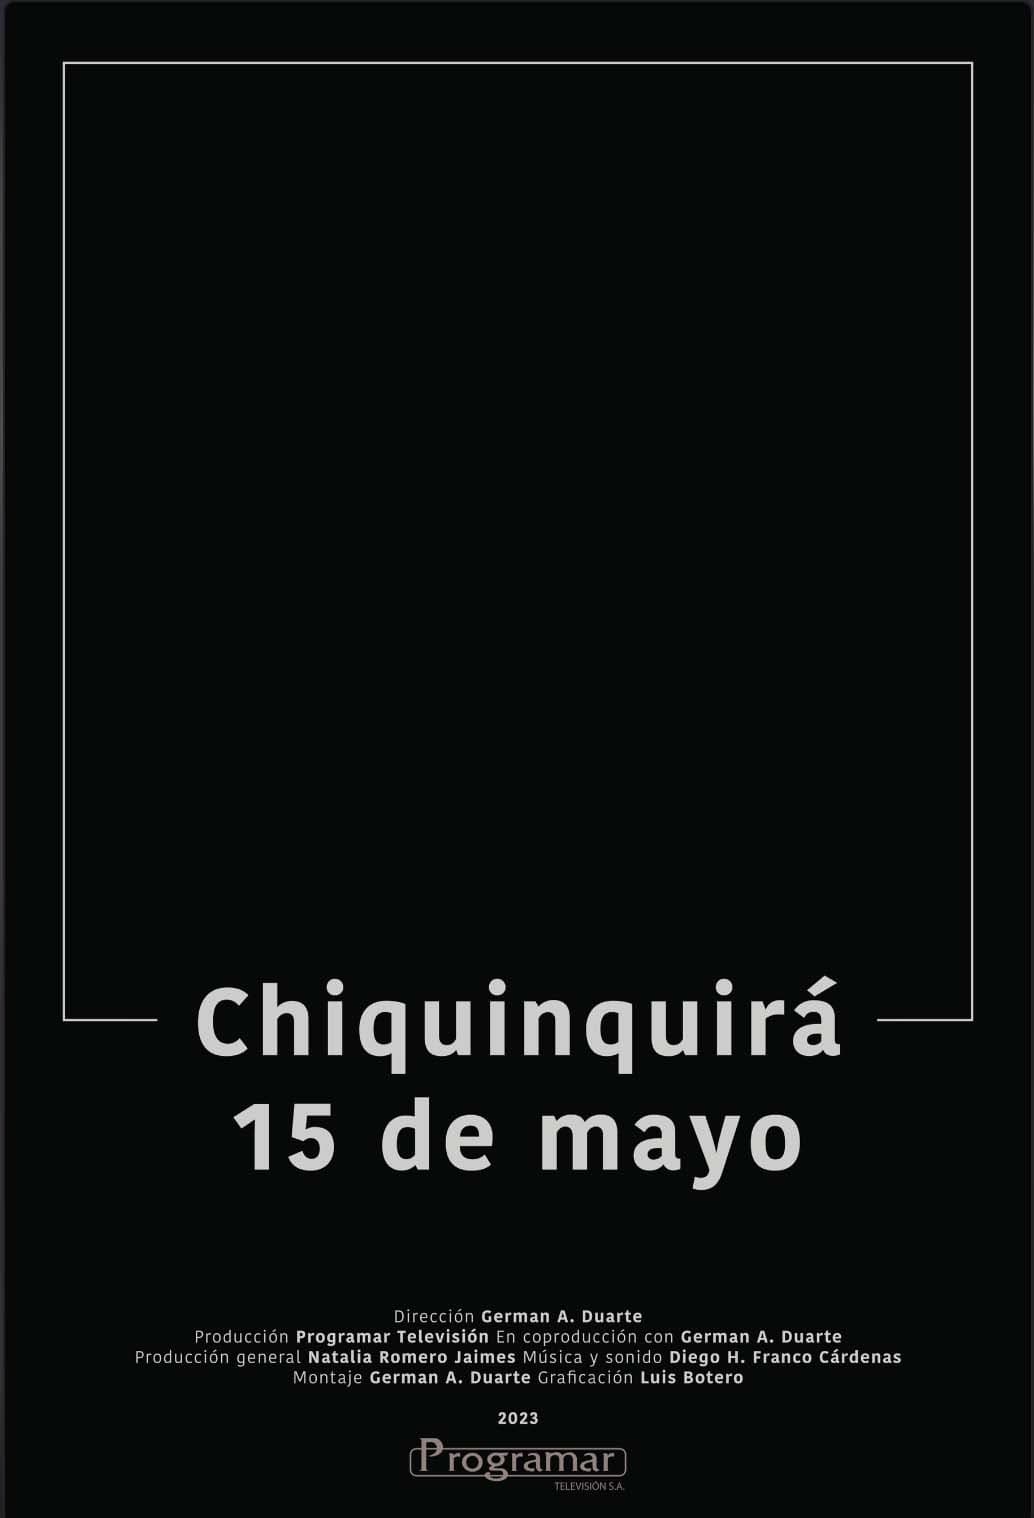 Chiquinquirá, May 15th